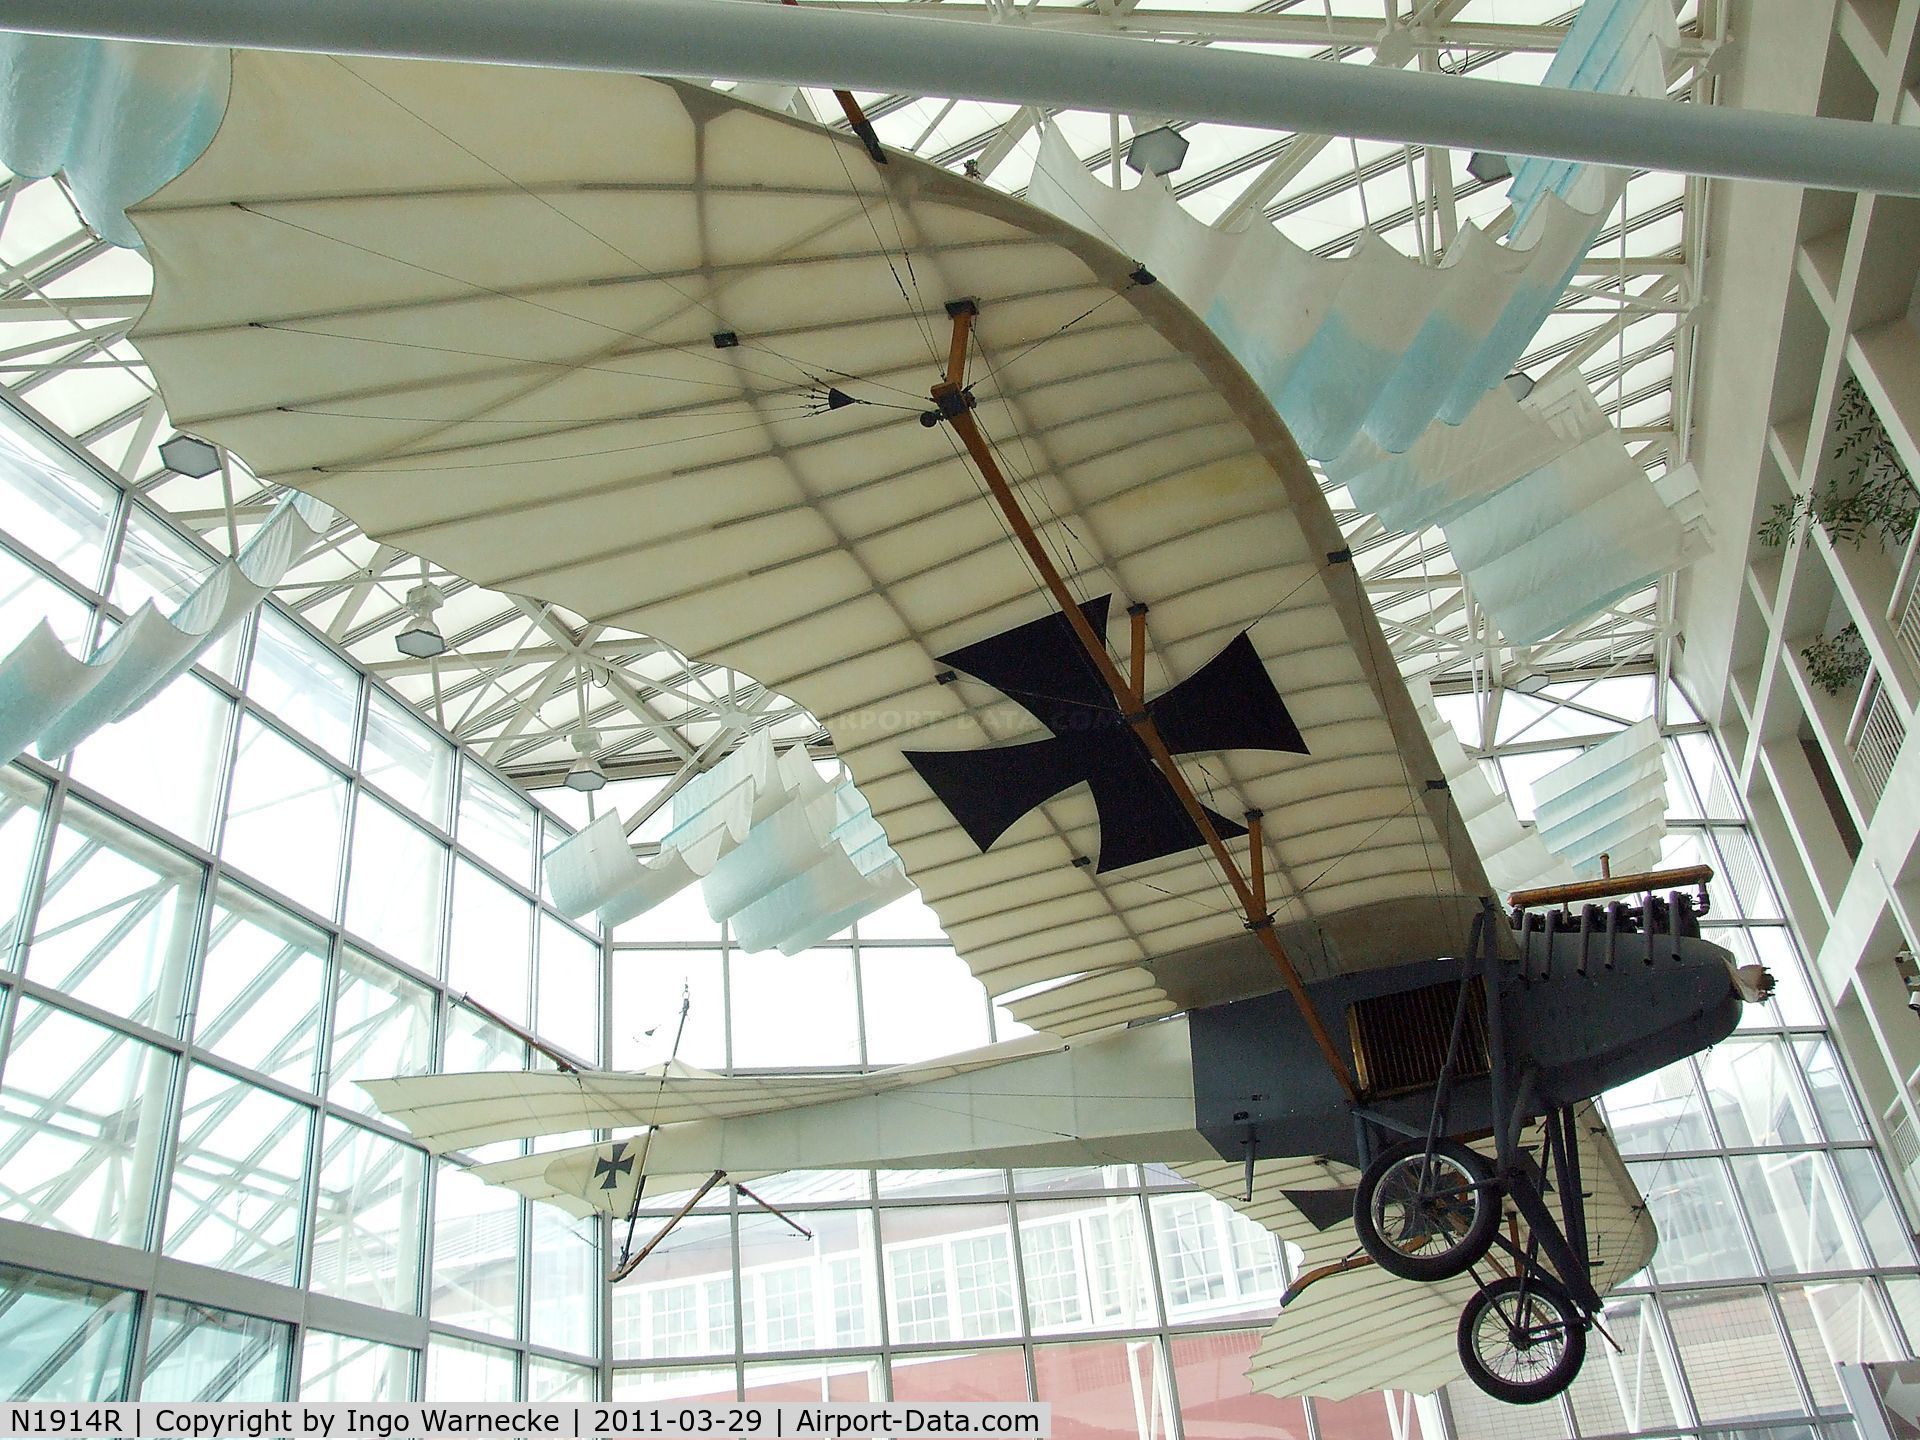 N1914R, Rumpler Taube Replica C/N 0039, Arthur A. Williams Rumpler Taube replica at the Museum of Flight, Seattle WA